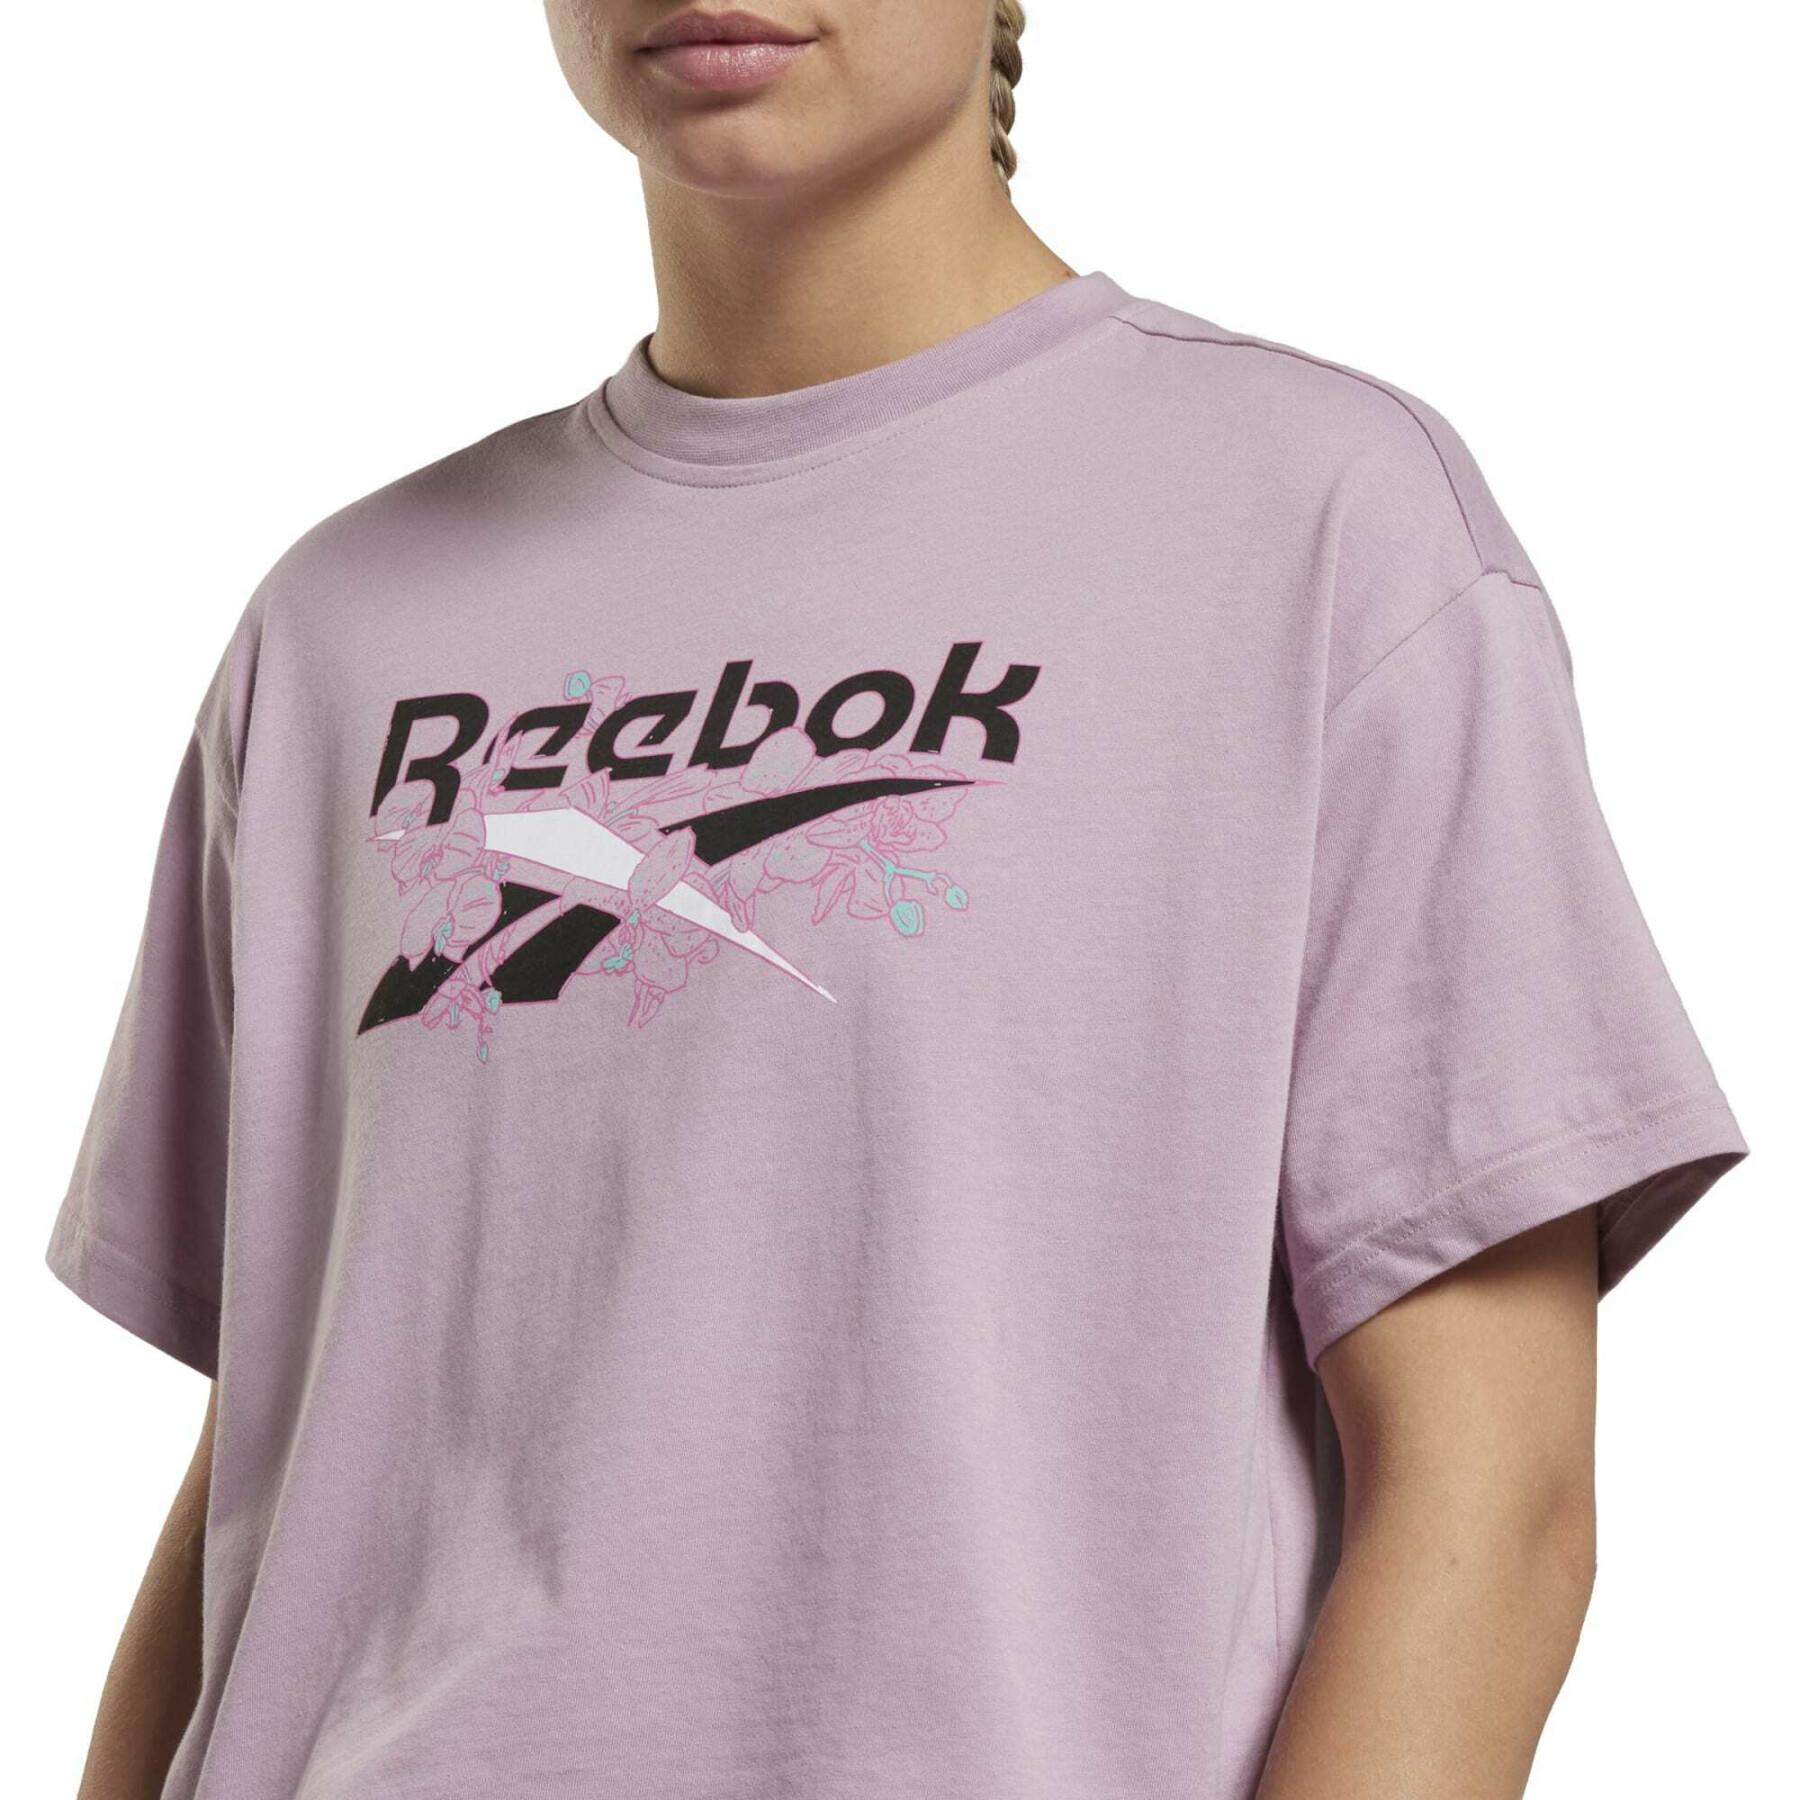 Origineel T-shirt voor dames Reebok